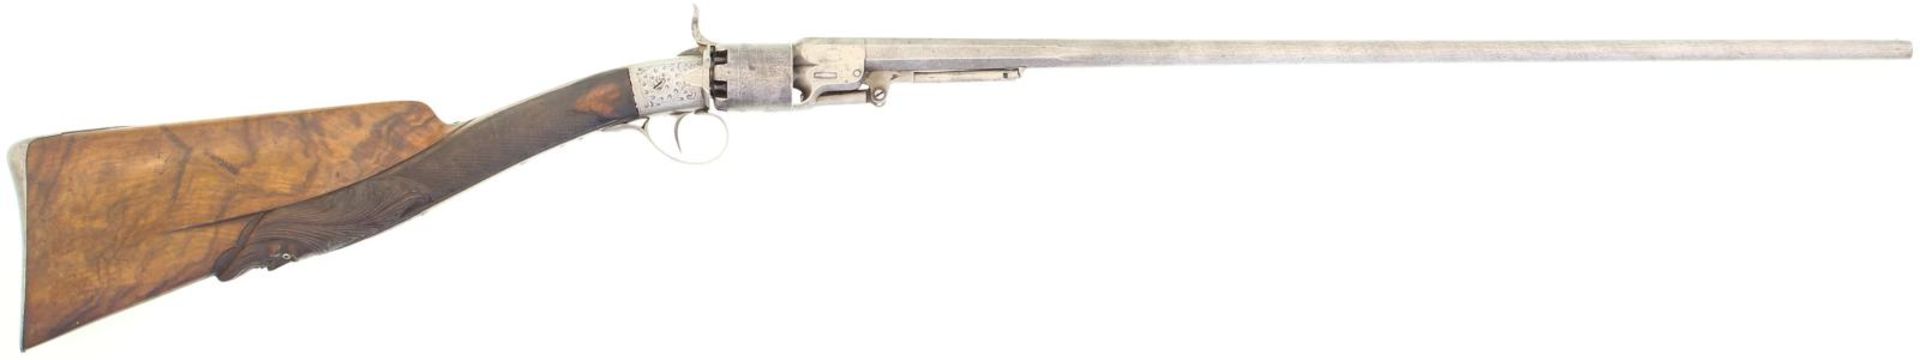 Perkussions-Revolverkarabiner, T.Ihoist, Kal. 38, Rundlauf mit achtkantigem Ansatz aus